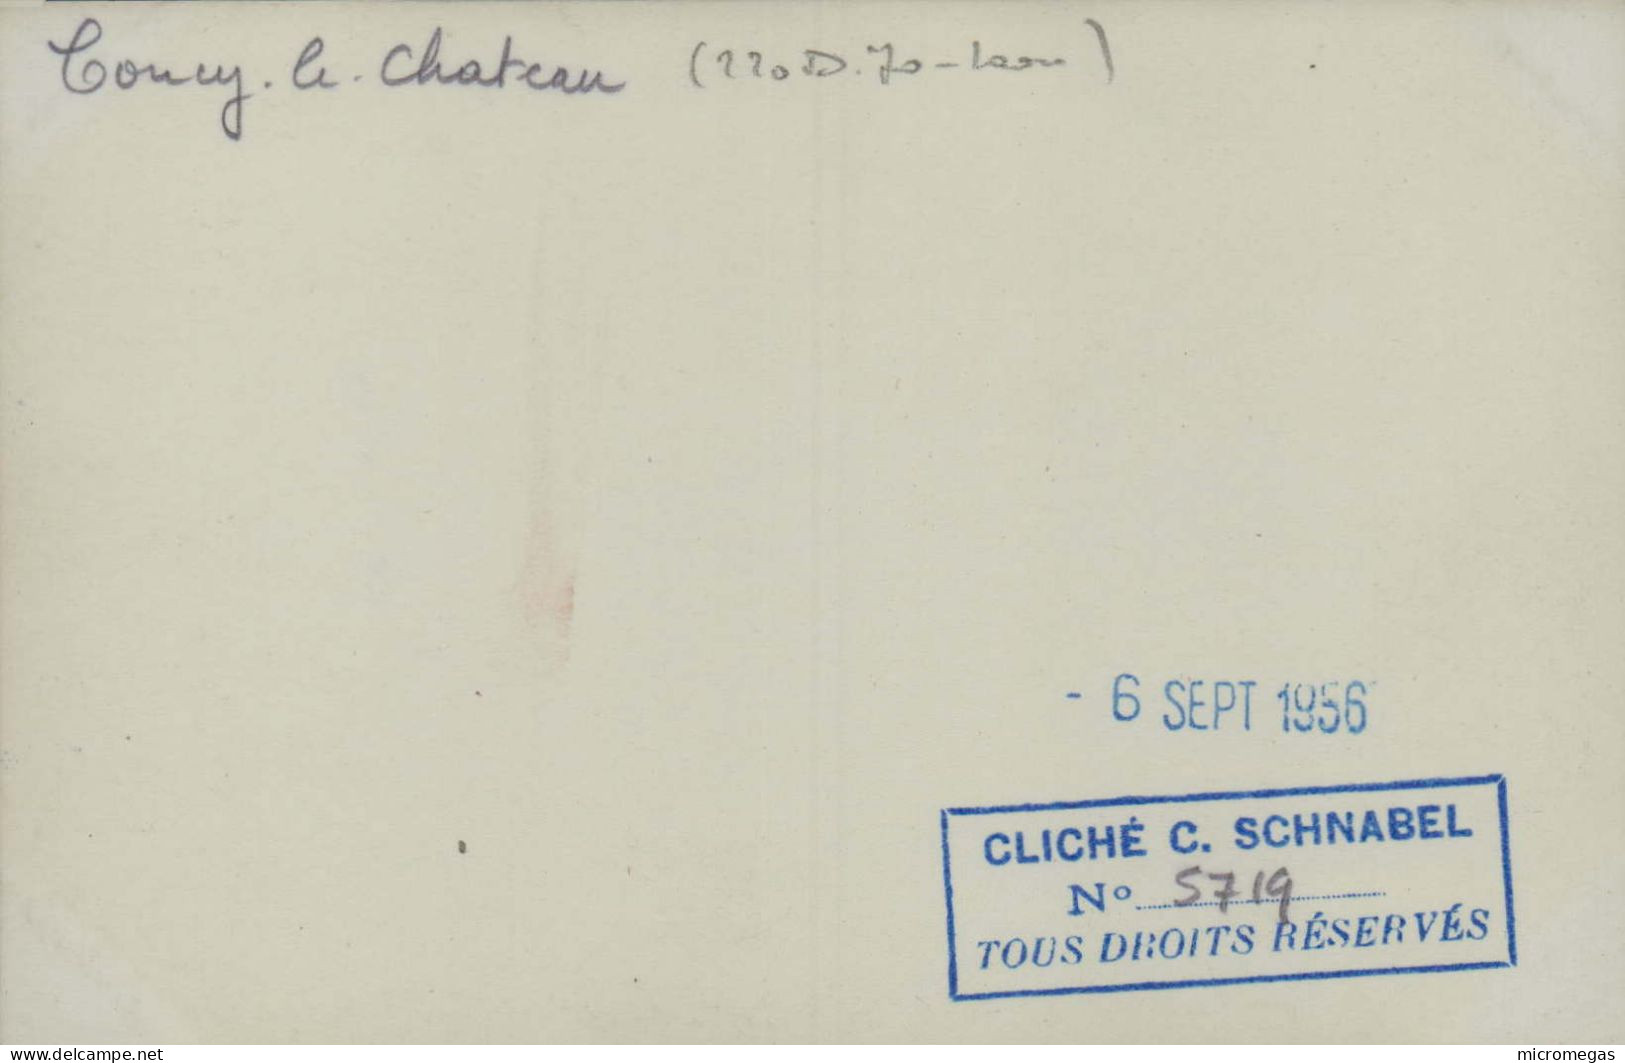 COUCY-le-CHÂTEAU - 220-D-70 Laon - Cliché C. Schnabel, 6 Sept. 1956 - Trains